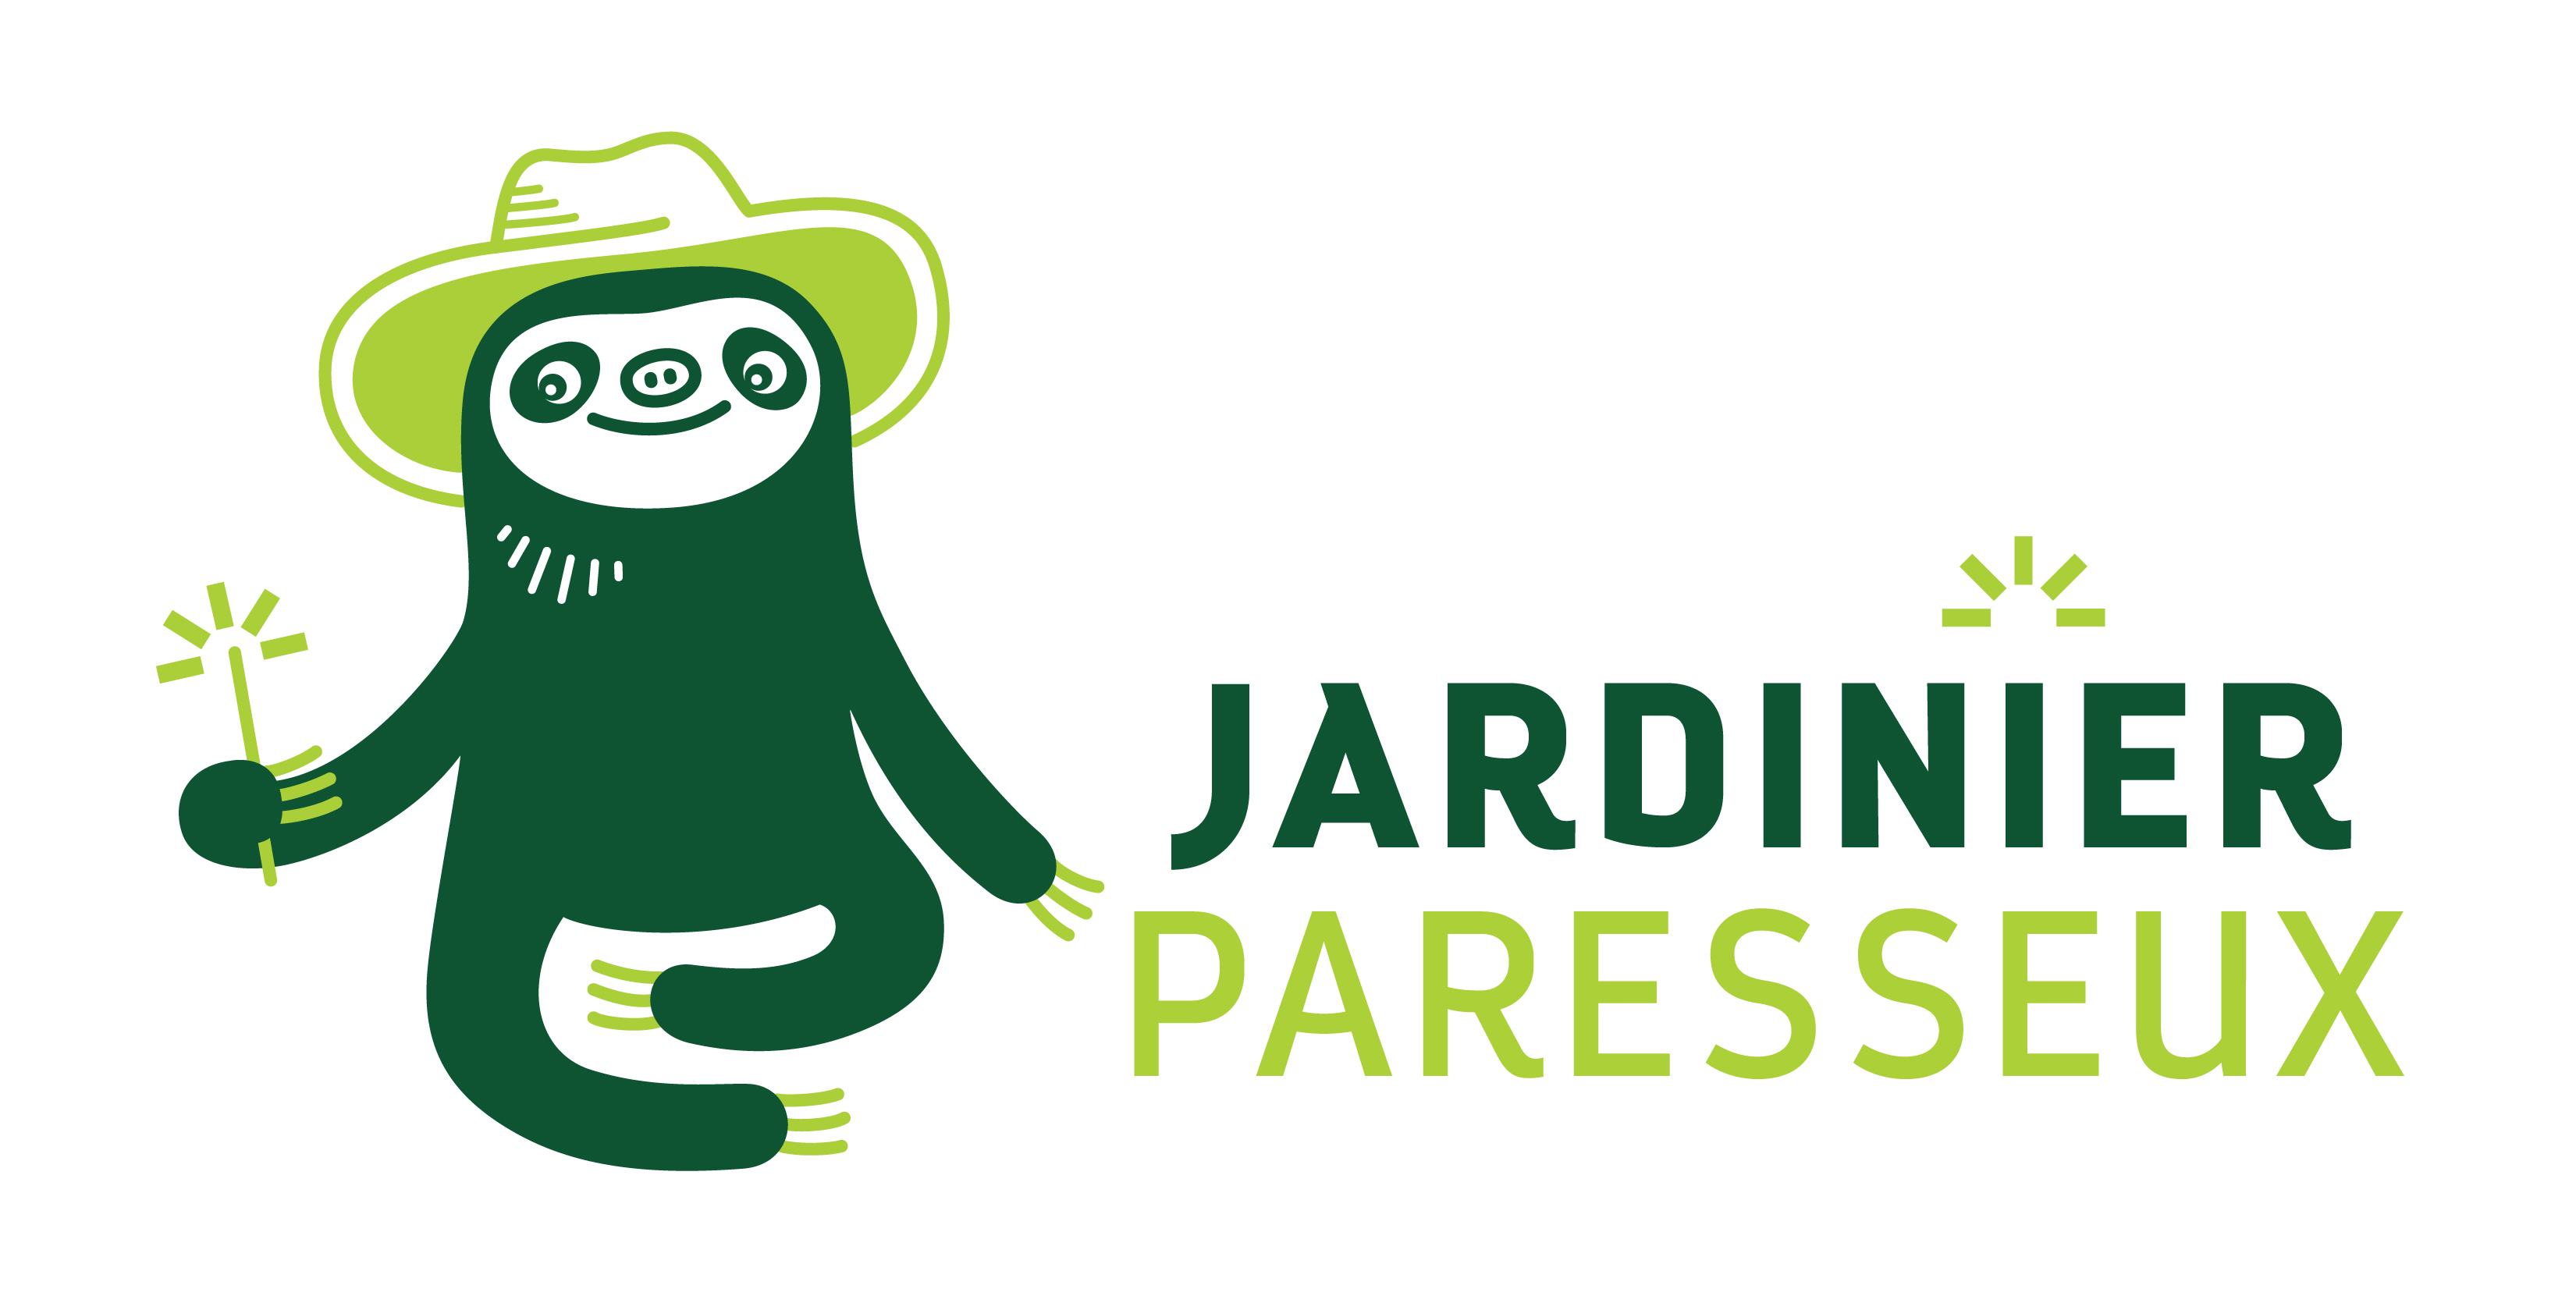 Jardinier paresseux logo